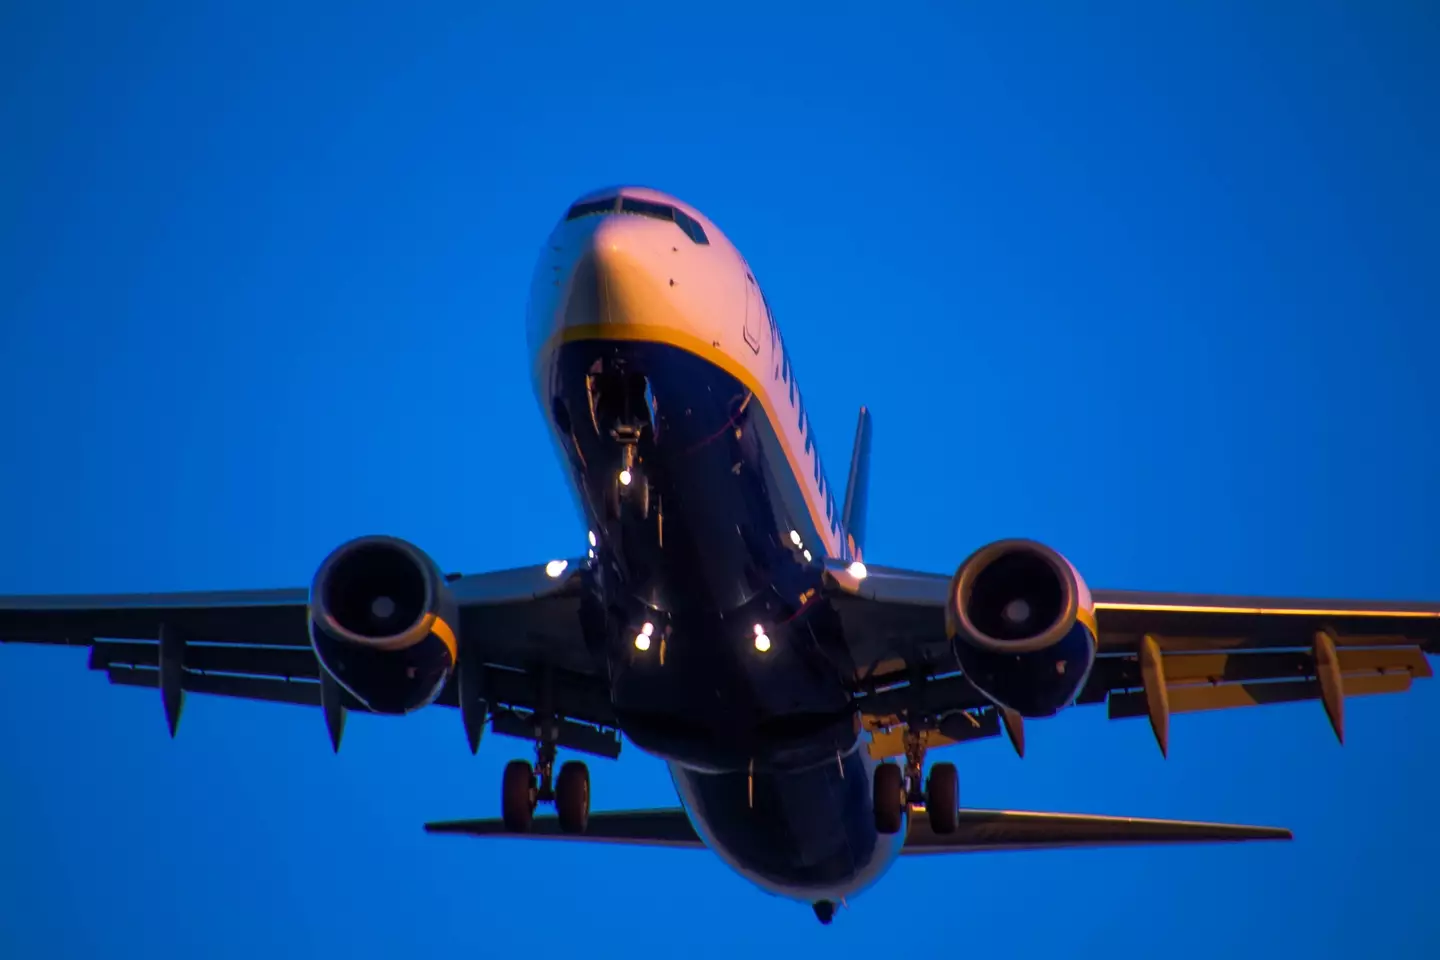 A Ryanair aircraft.